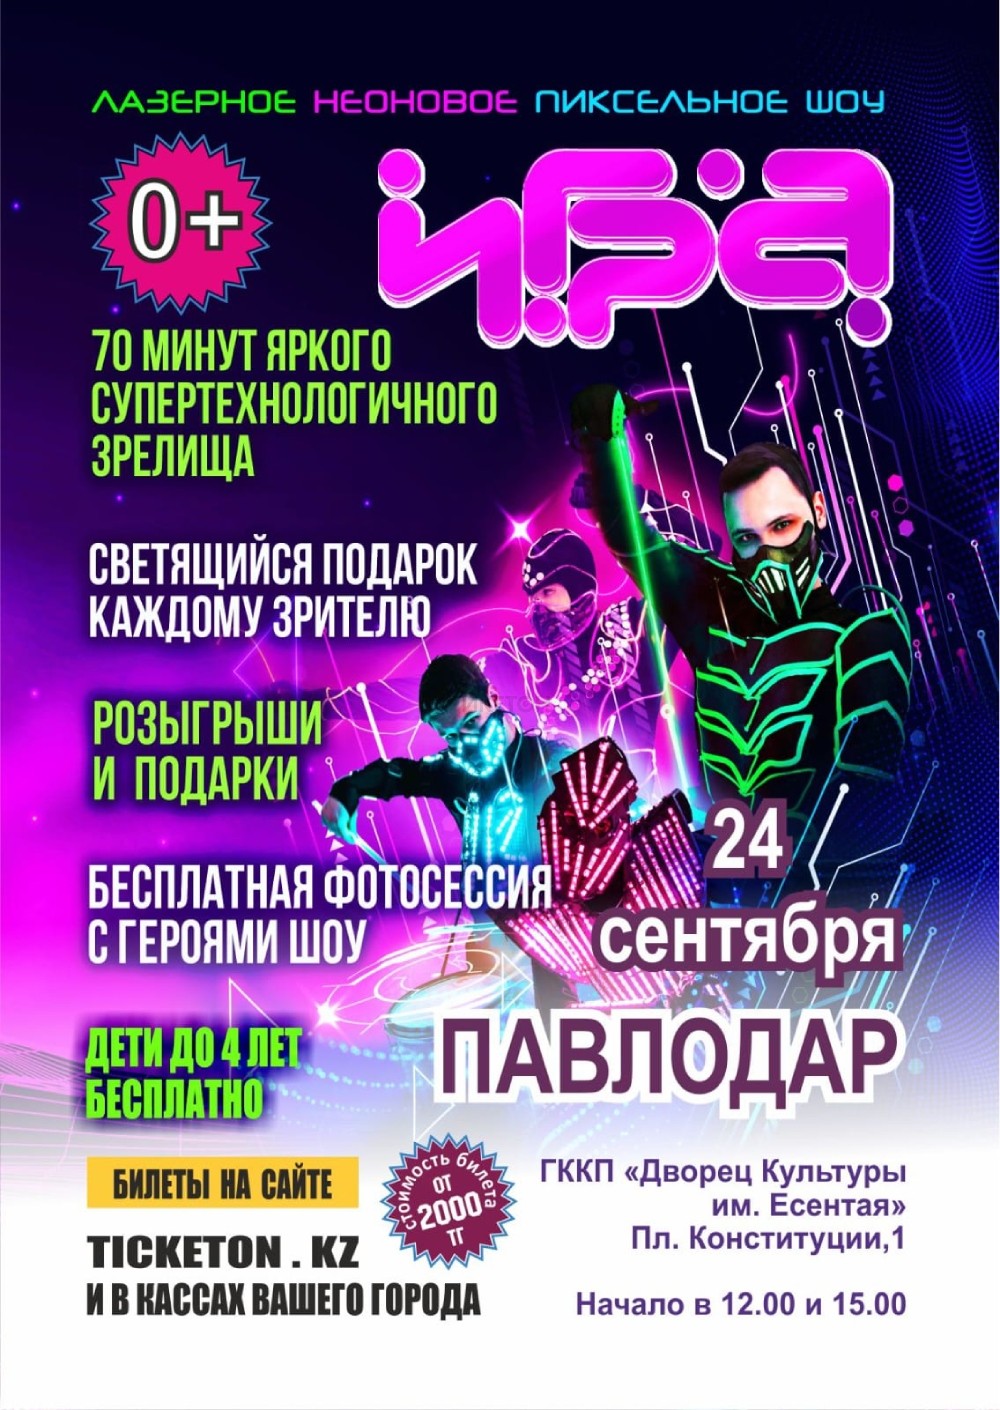 Лазерное неоновое шоу «Игра» в Павлодаре